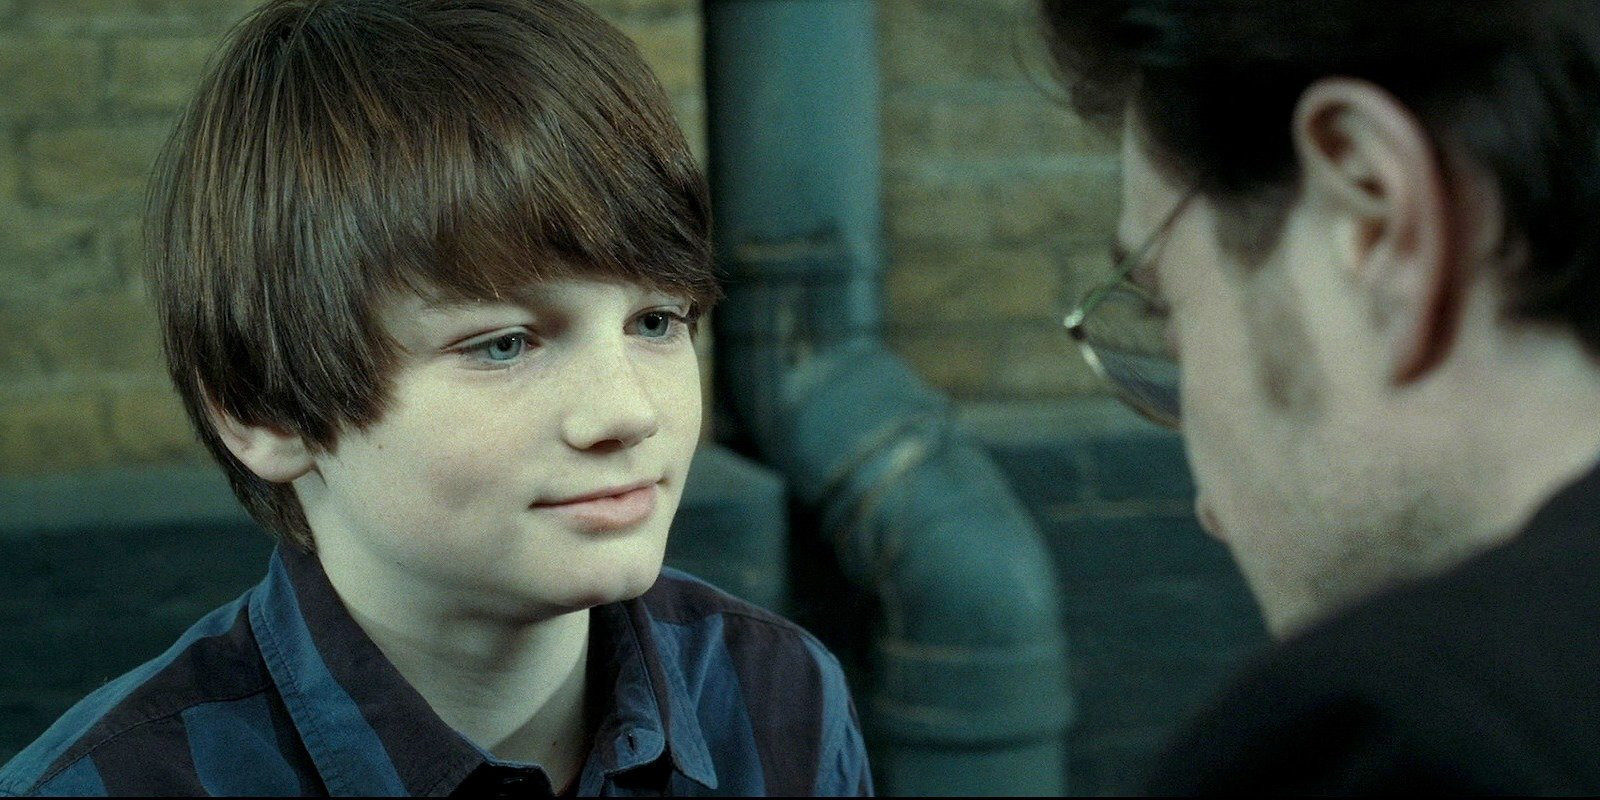 Fanfic: 'Estimado señor Potter', una carta de Albus Severus en su primer año de clase